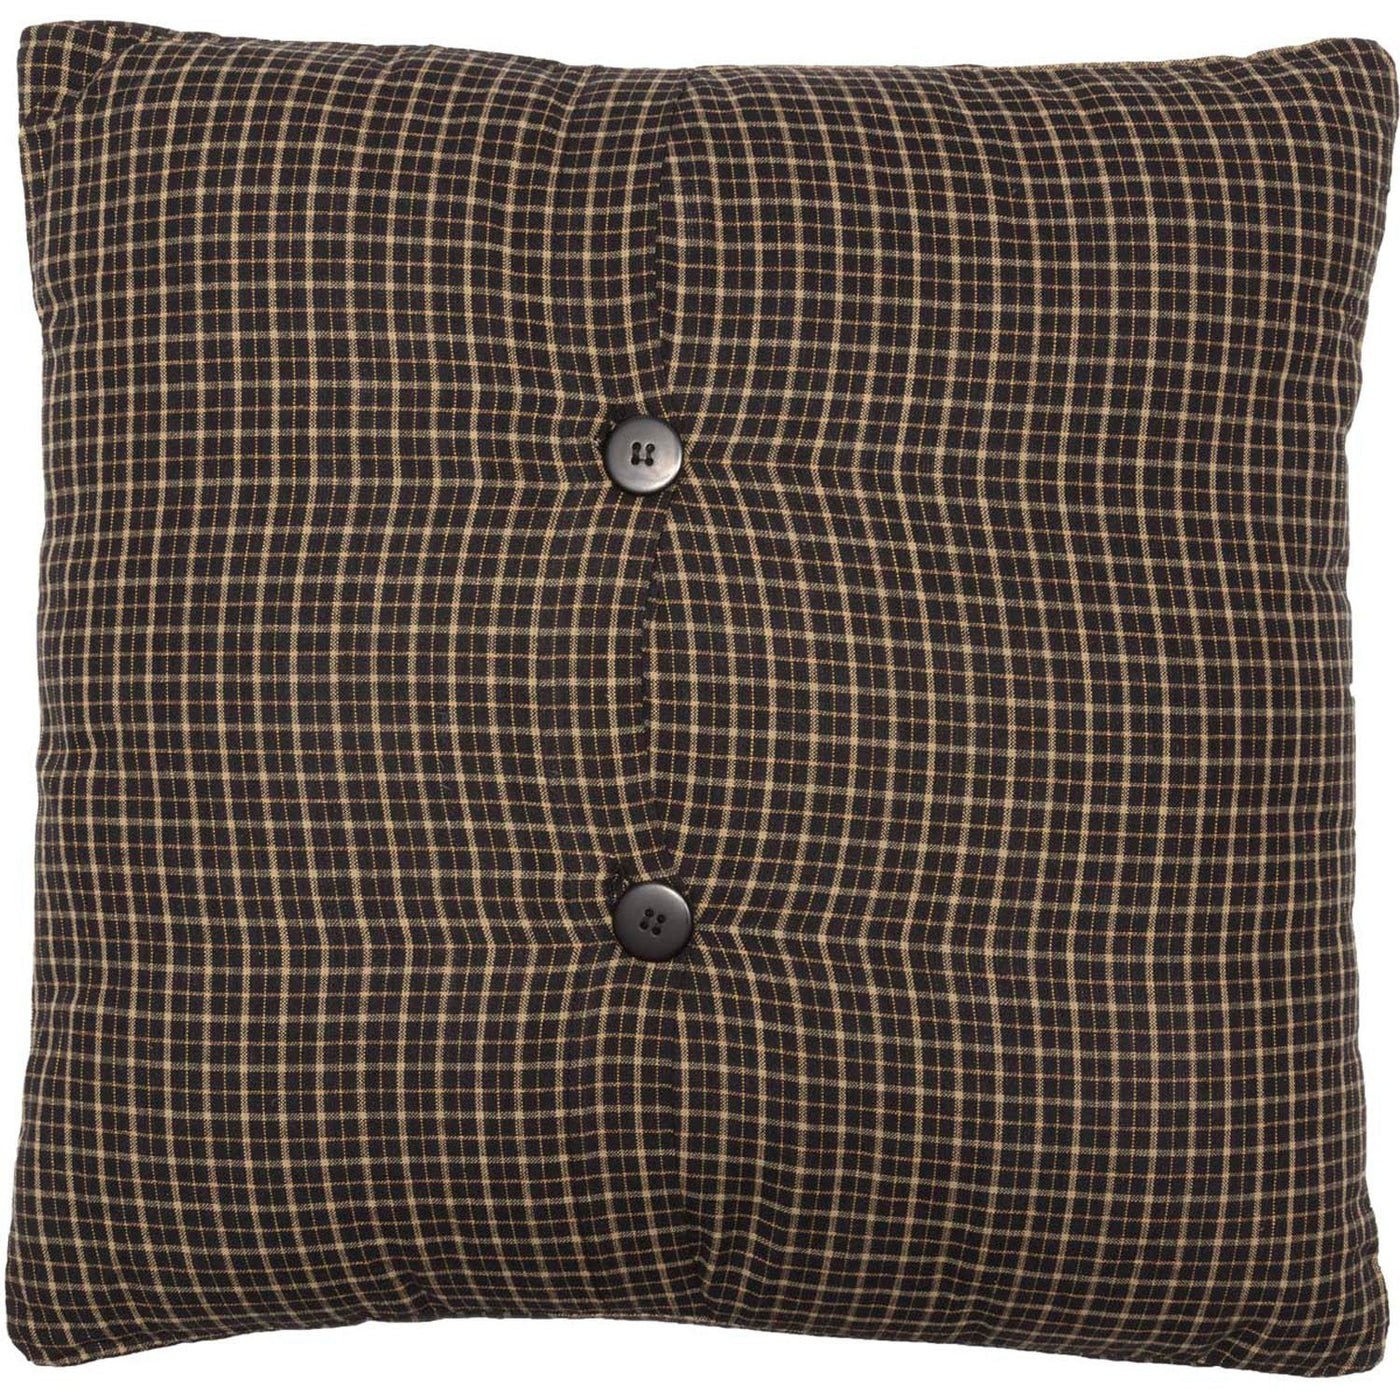 Kettle Grove I 16 x 16 Pillow - Black/Khaki